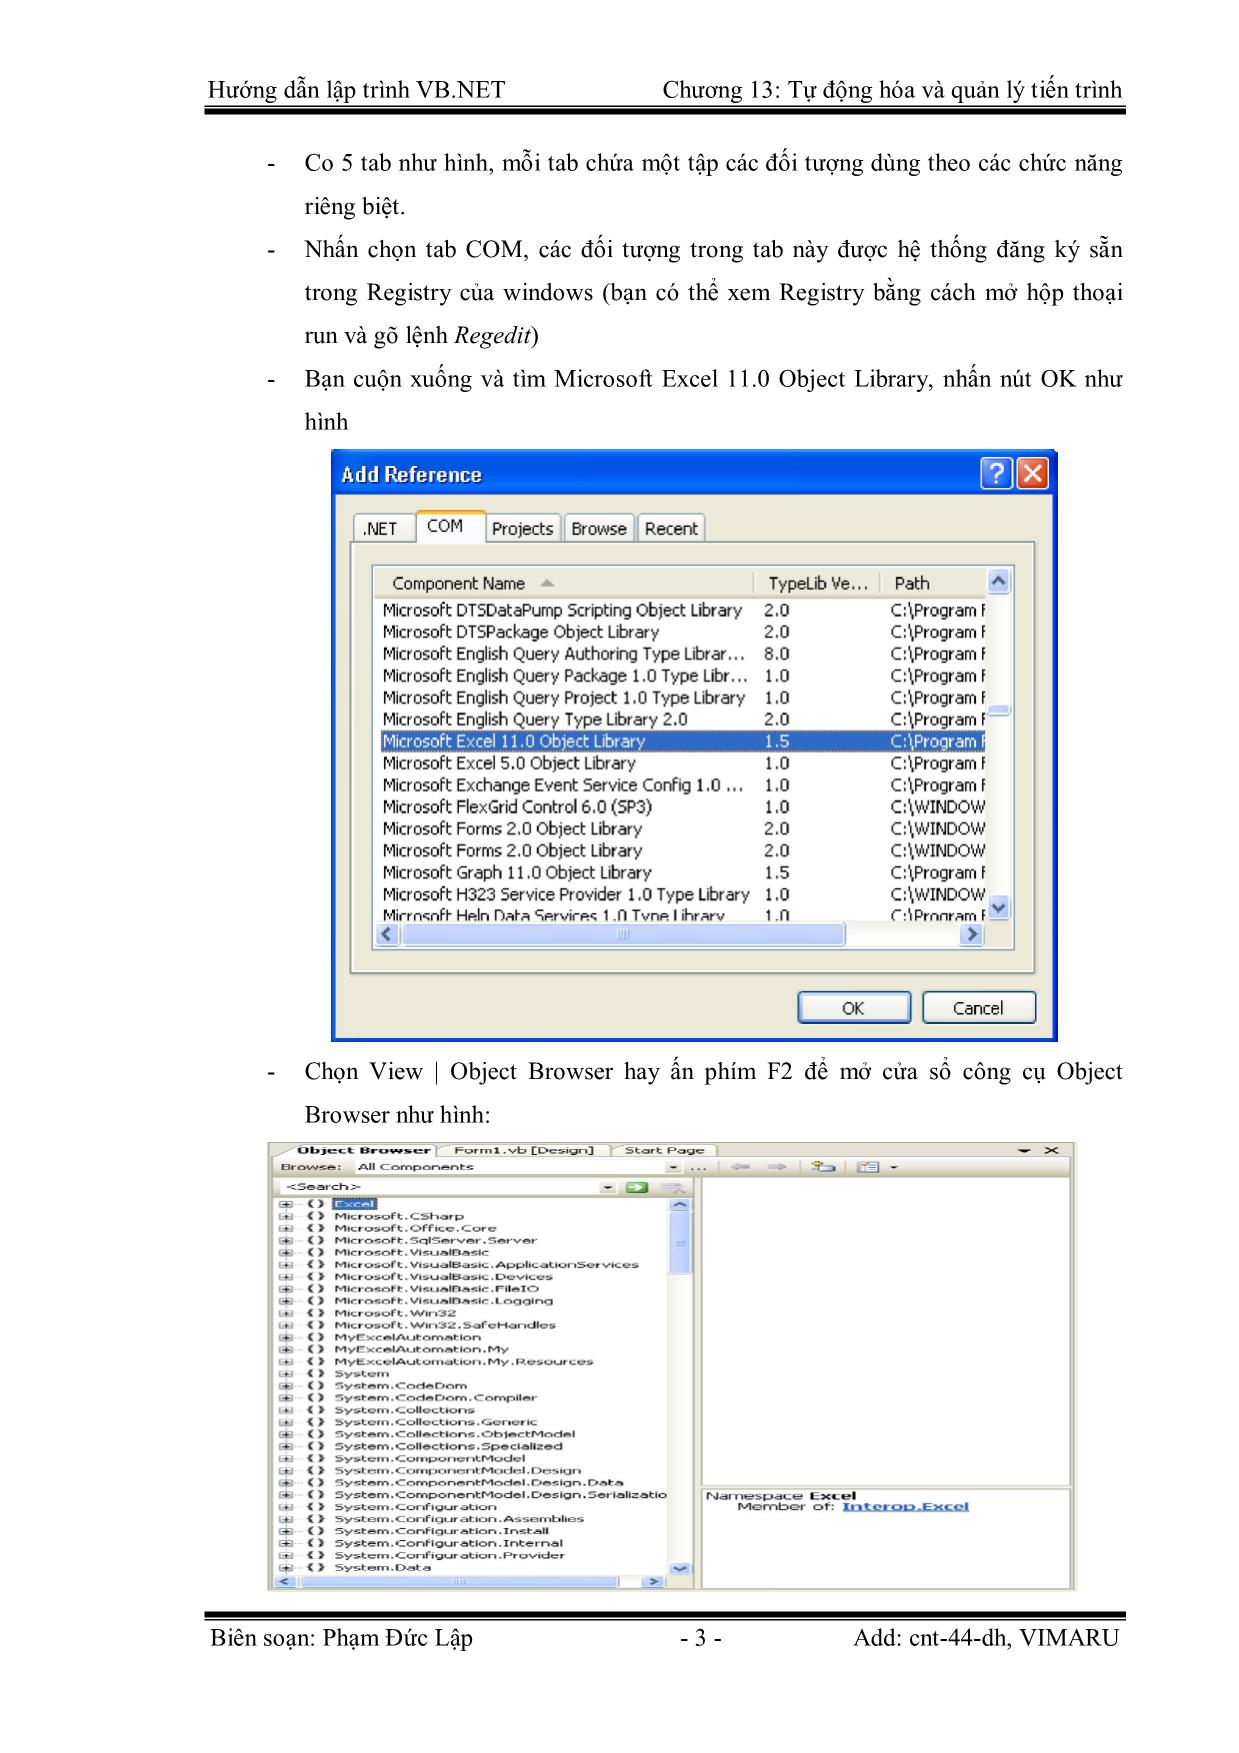 Giáo trình Hướng dẫn lập trình VB.NET - Chương 13: Tự động hóa trong ứng dụng Microsoft và quản lý tiến trình - Phạm Đức Lập trang 3